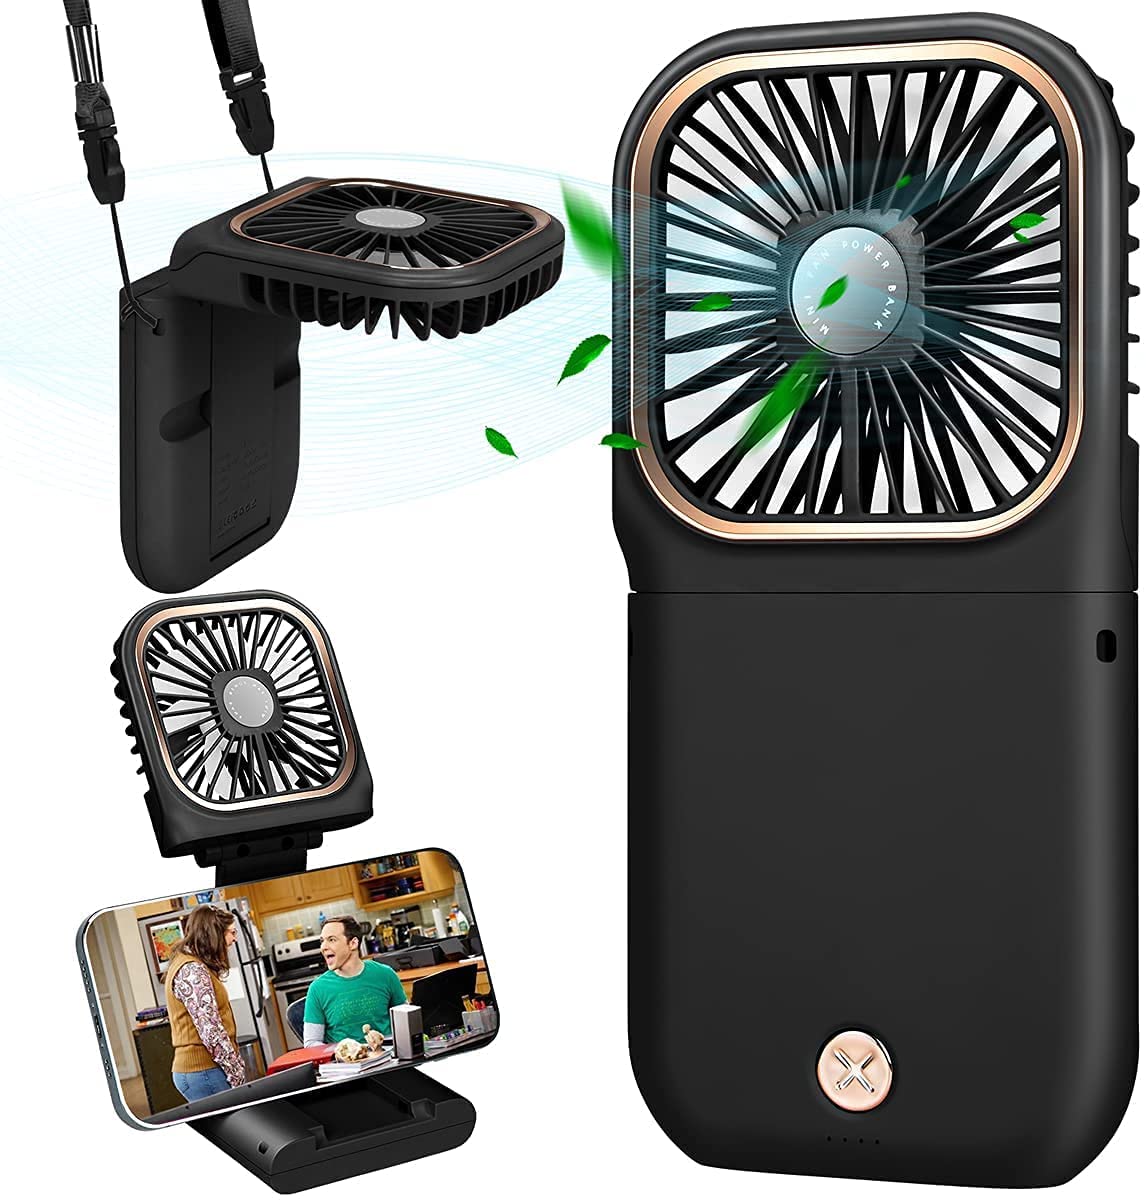 
                                    
                                Ventilatore portatile: mini, a batteria, usb e silenzioso da portare sempre con se